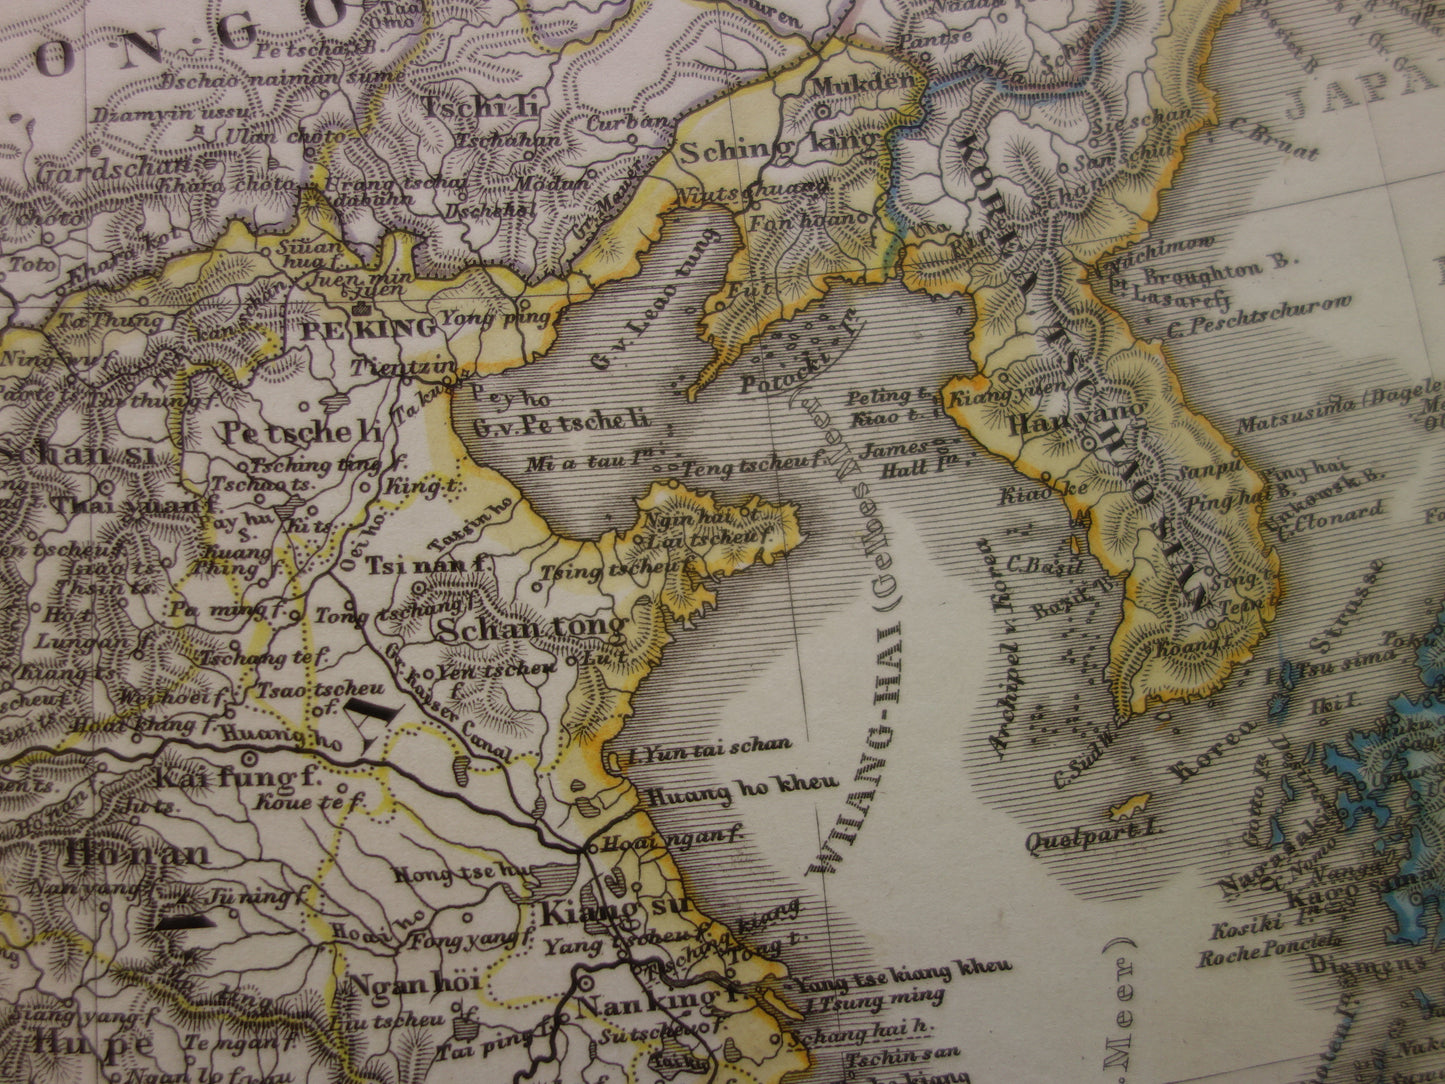 CHINA oude Duitse kaart van China en Japan in 1863 - originele antieke landkaart vintage poster Azië